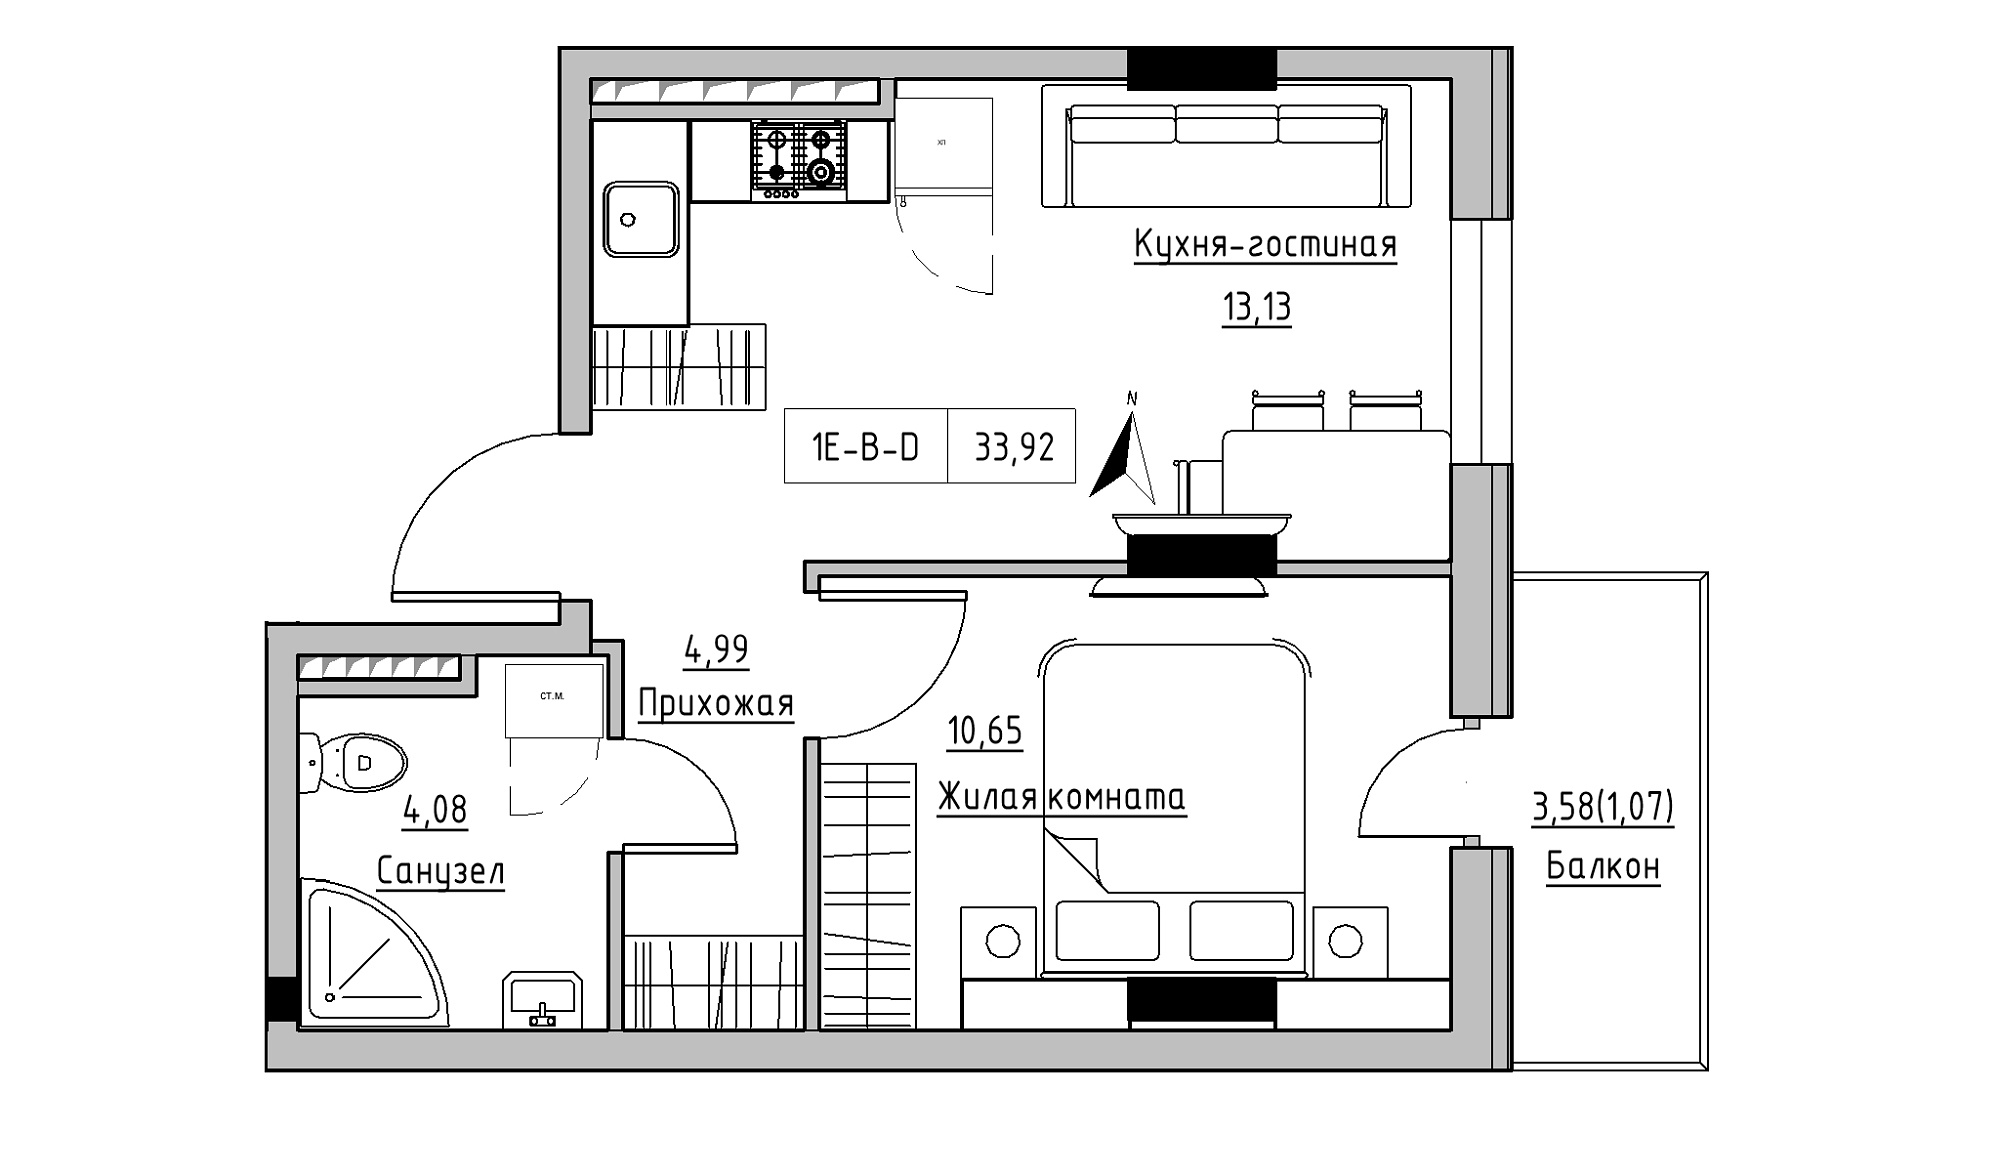 Планування 1-к квартира площею 33.92м2, KS-025-05/0002.